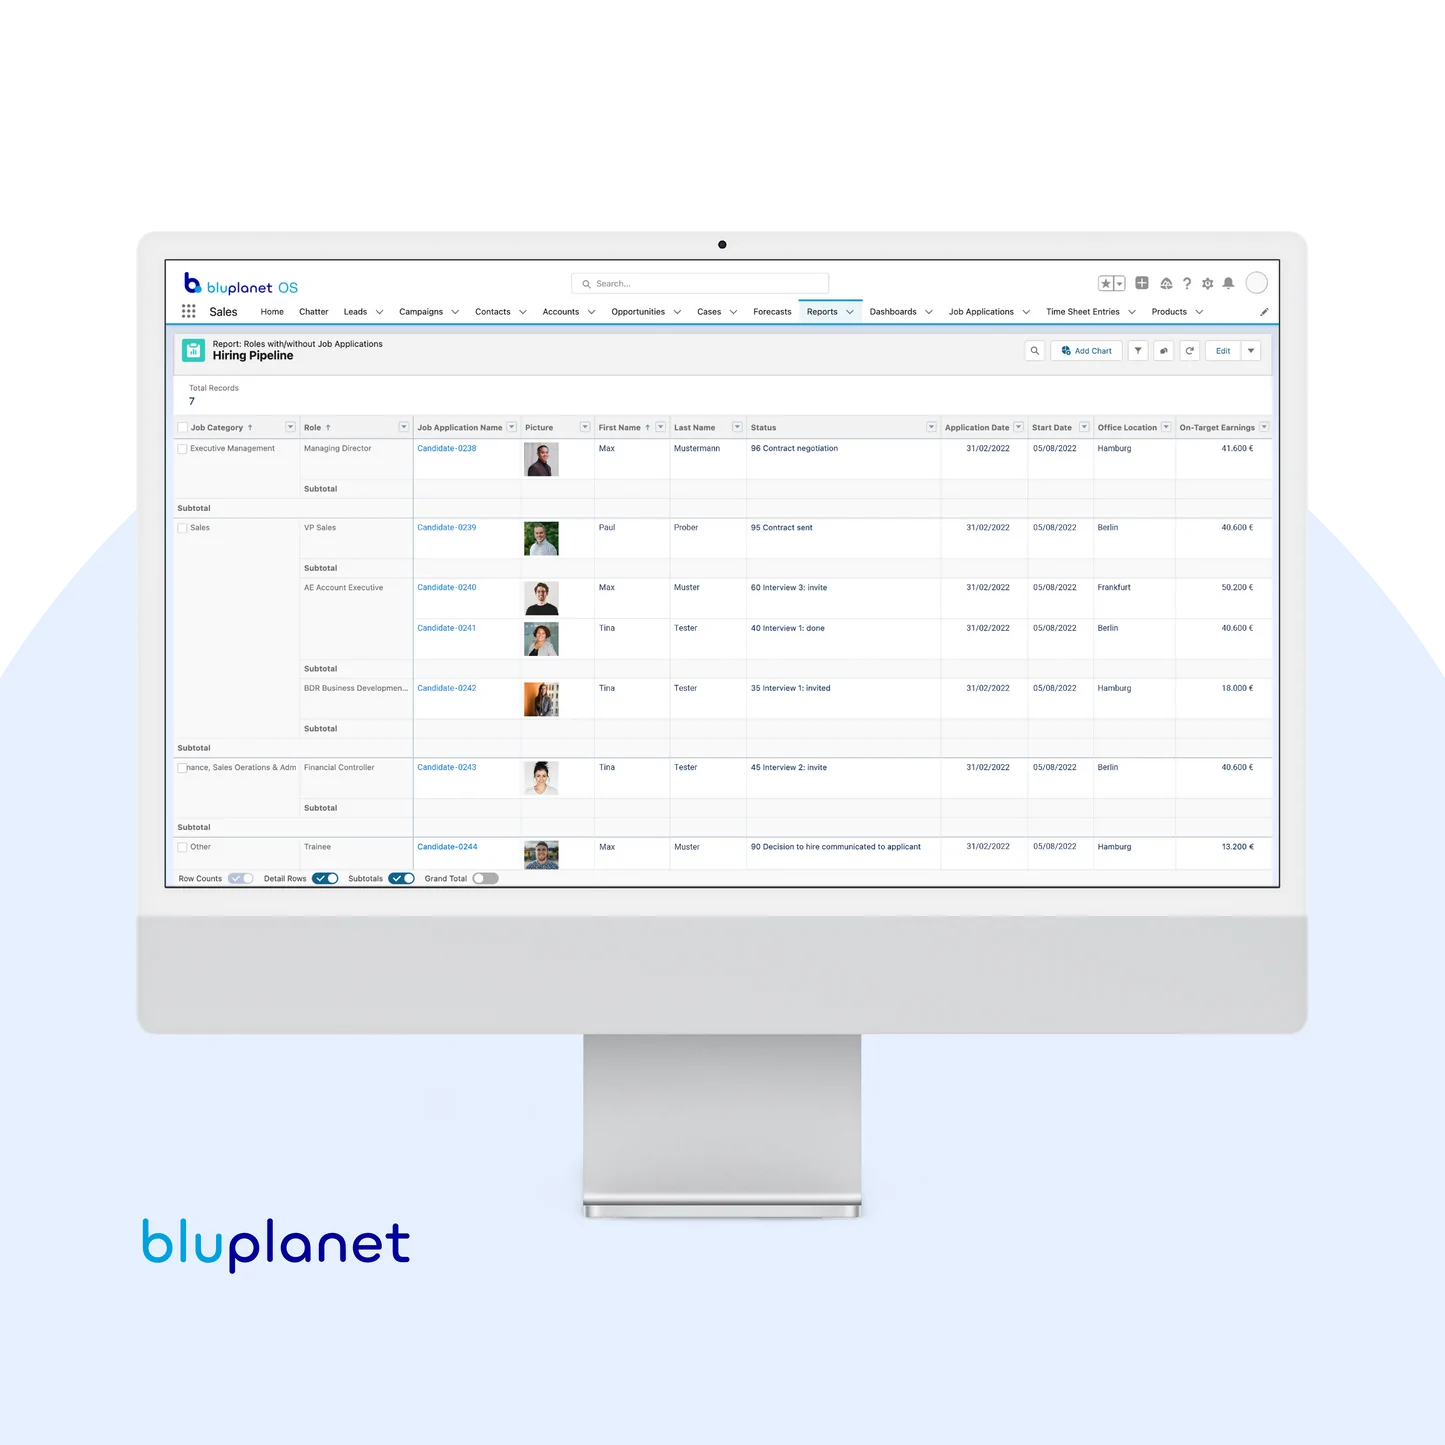 bluplanet OS: Salesforce Add-on (ATS + Finance)